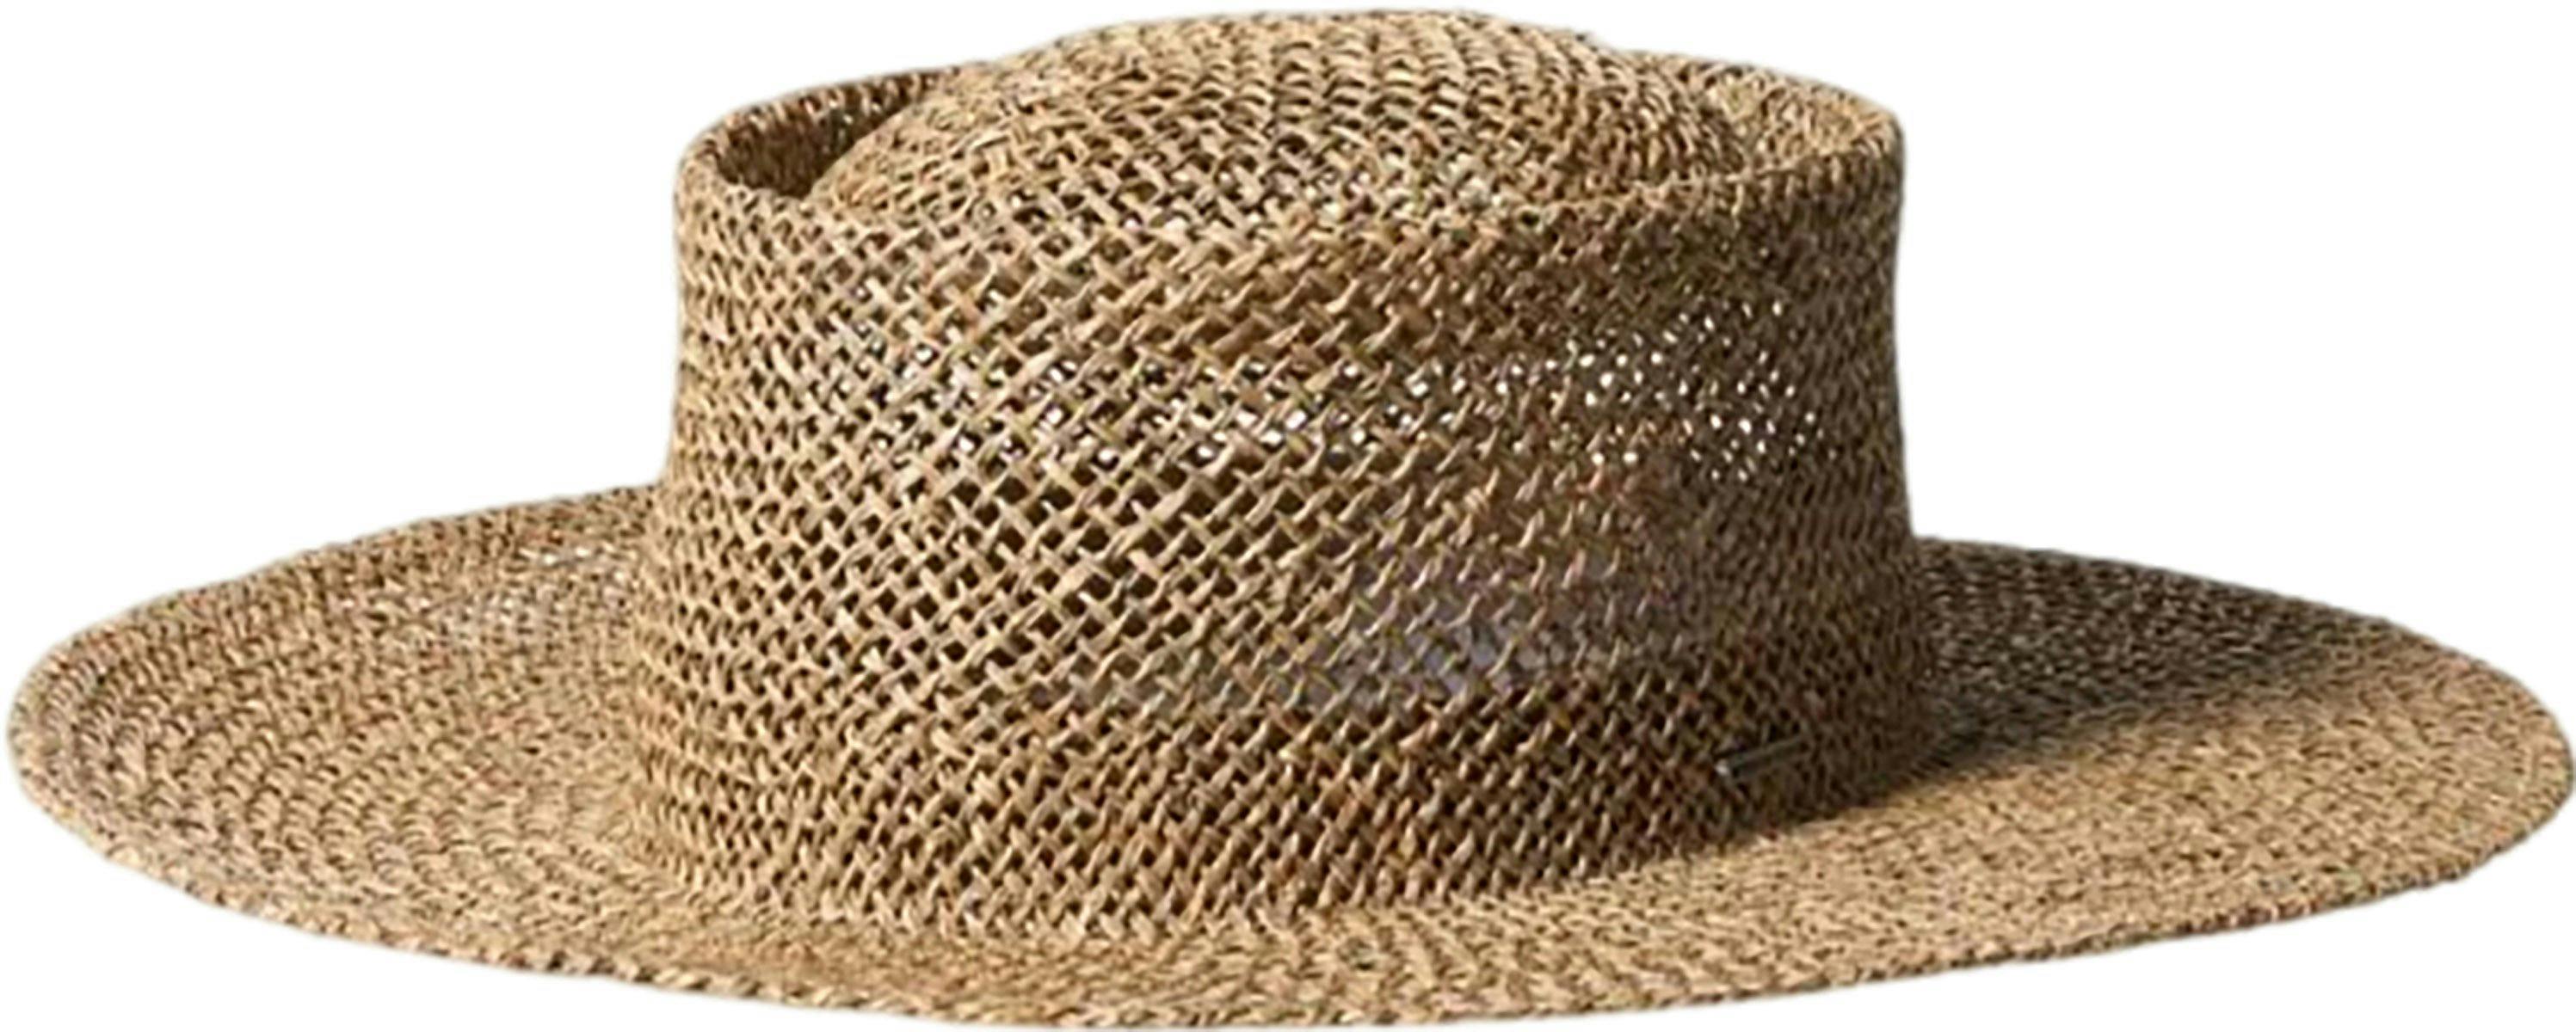 Image de produit pour Chapeau de paille Westward - Femme